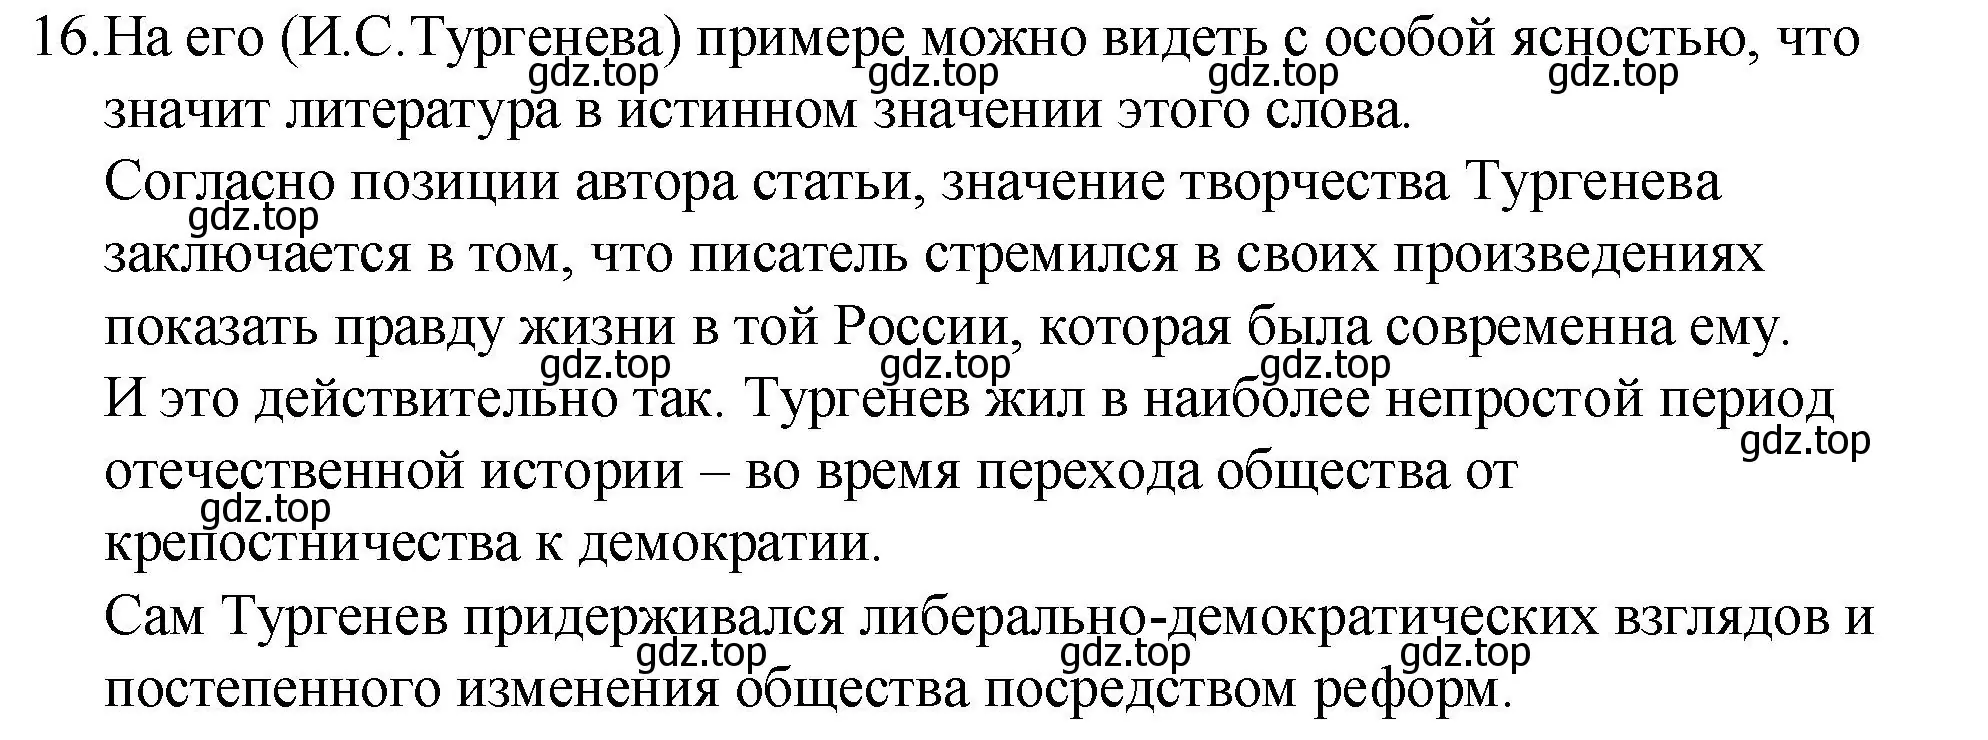 Решение номер 16 (страница 340) гдз по русскому языку 10-11 класс Гольцова, Шамшин, учебник 2 часть